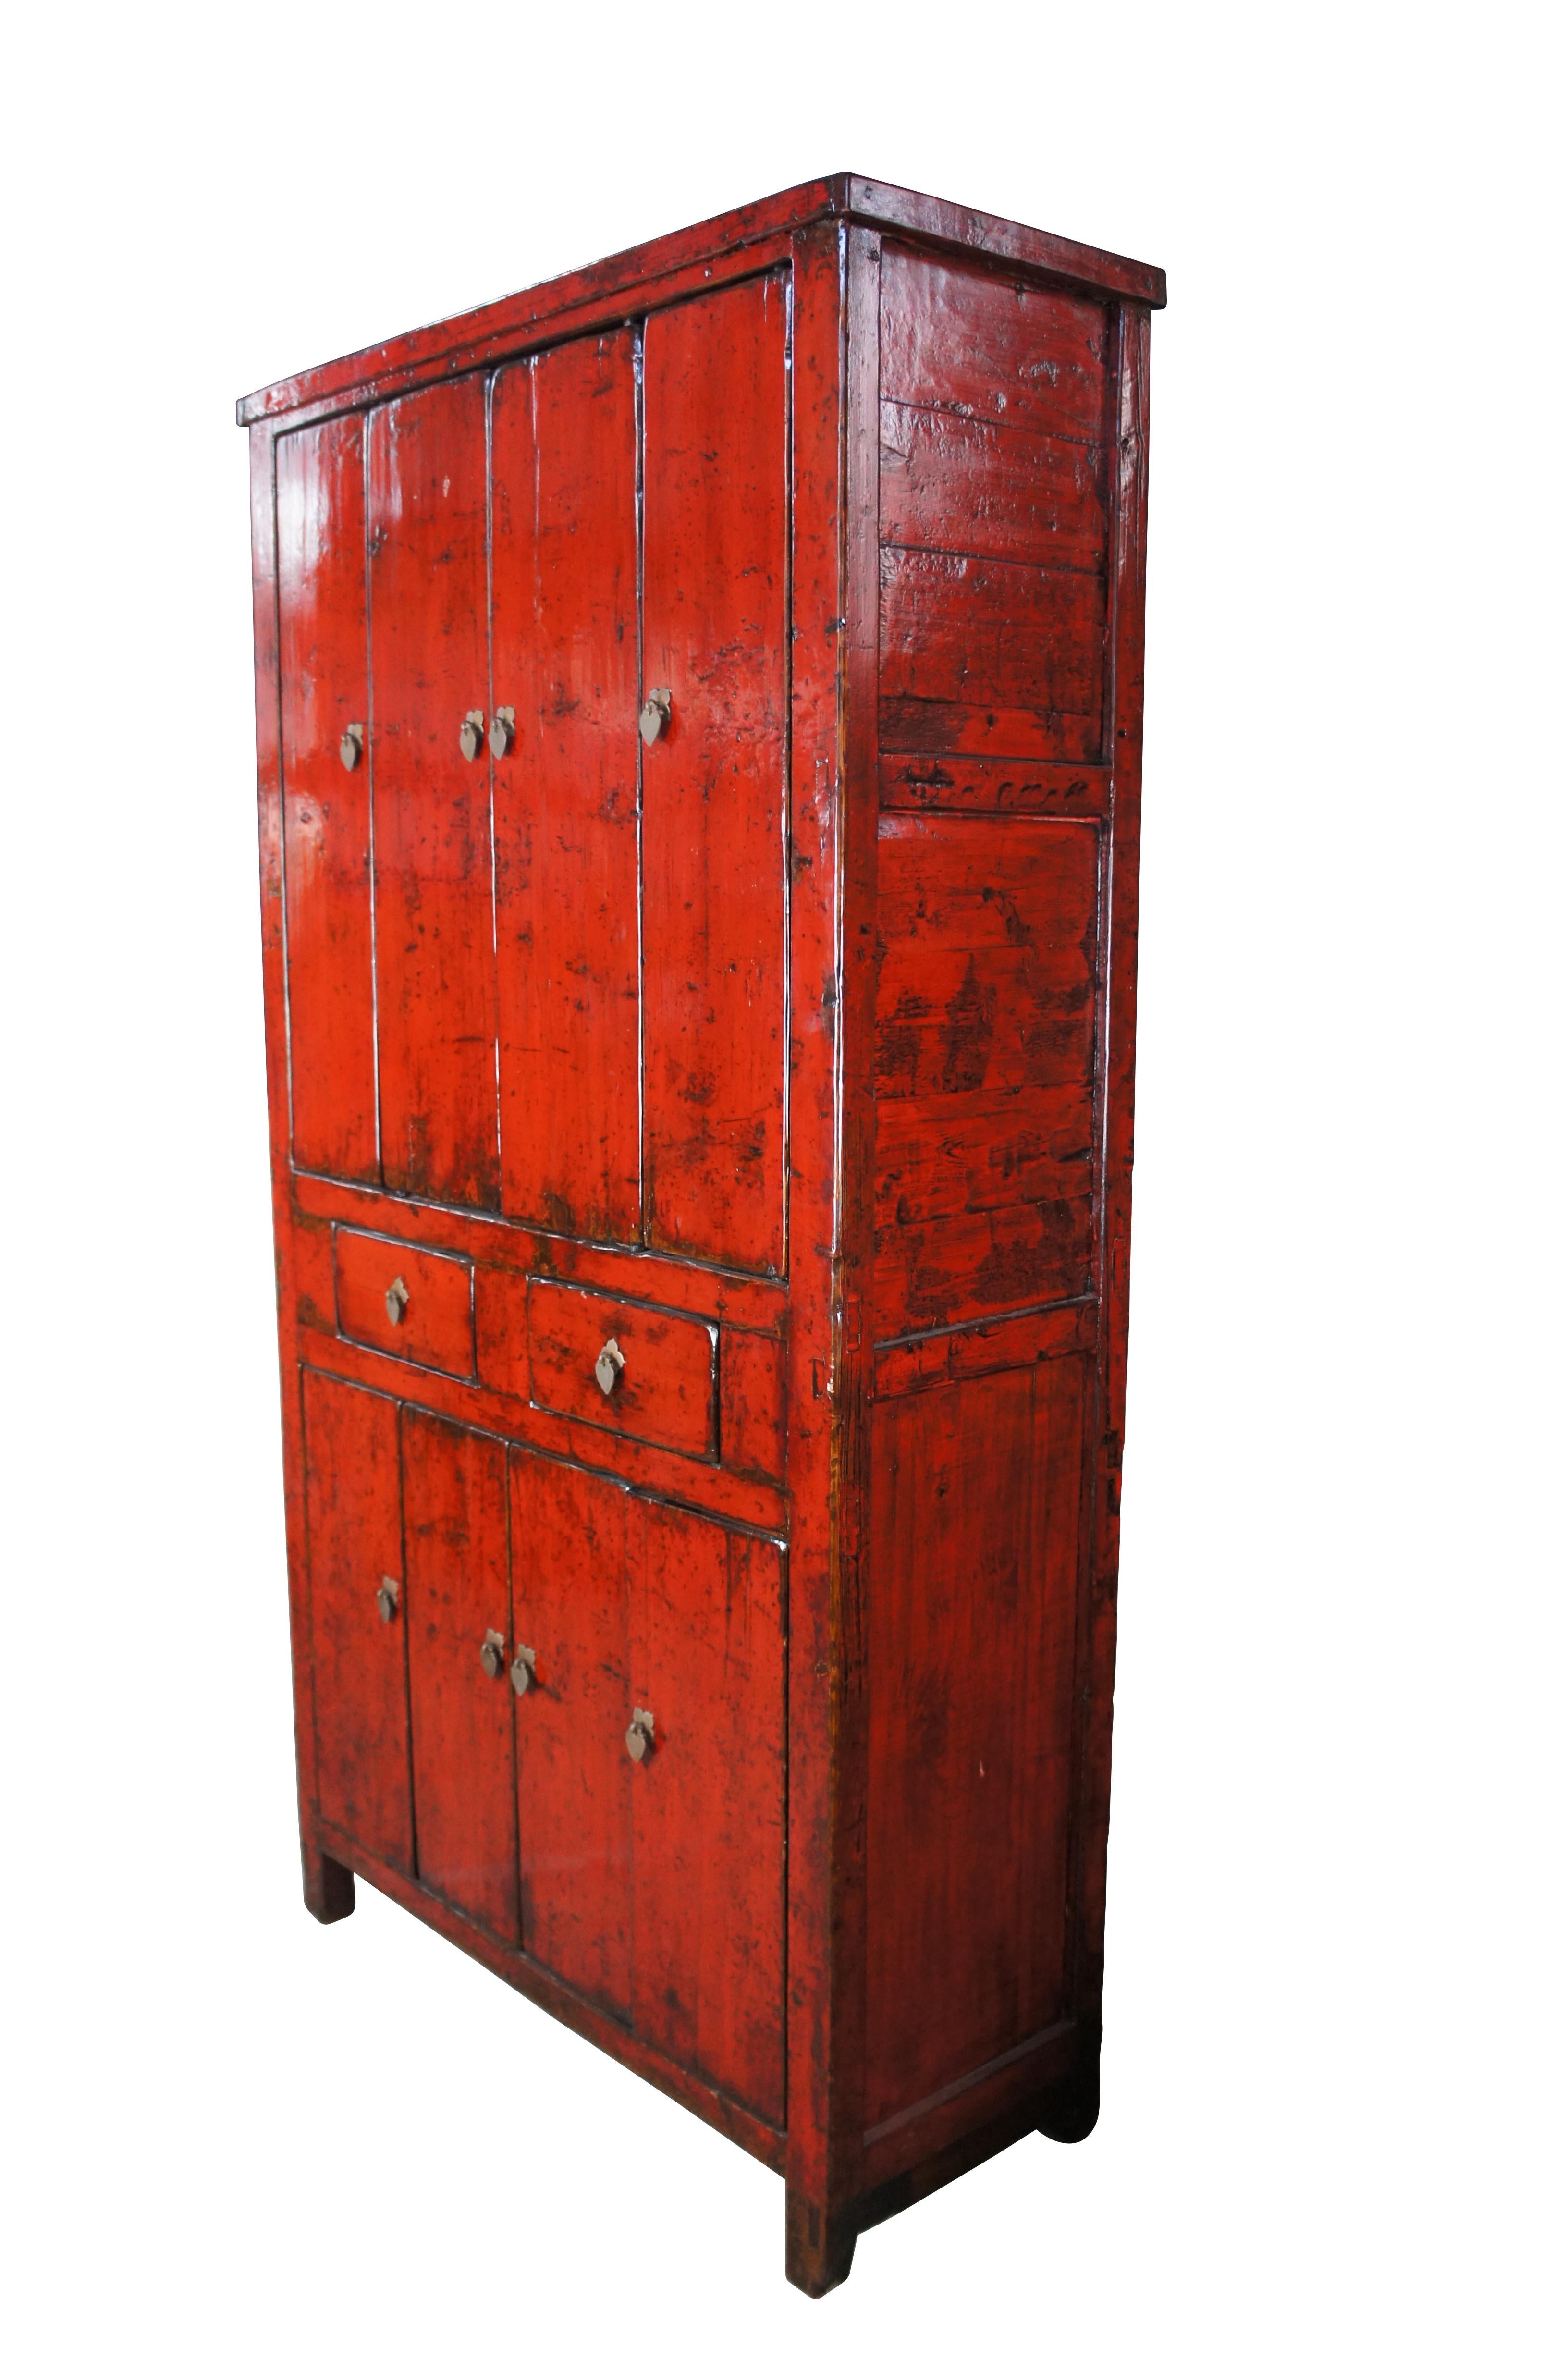 Monumentale armoire ancienne en laque rouge de Chine du Nord, vers 1870.  La grande taille de l'armoire la distingue des autres et lui confère un caractère très majestueux.  Fabriqué en orme avec une patine exquise.  Comprend deux tiroirs centraux